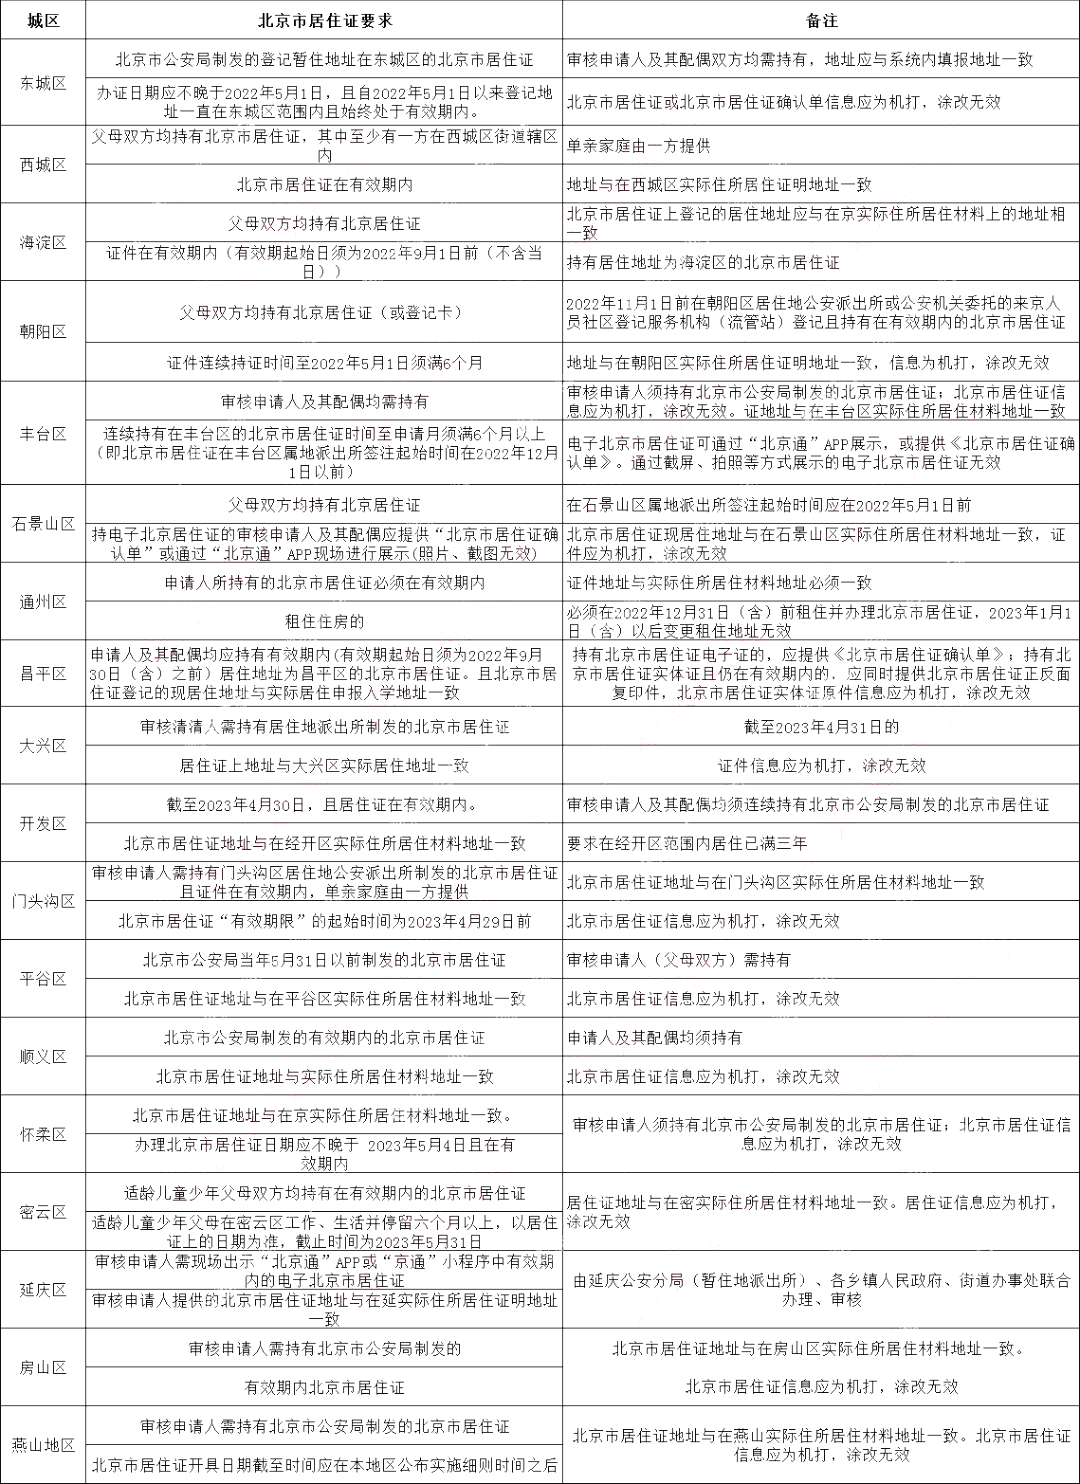 【关注】北京16区非京籍入学均需办理居住证